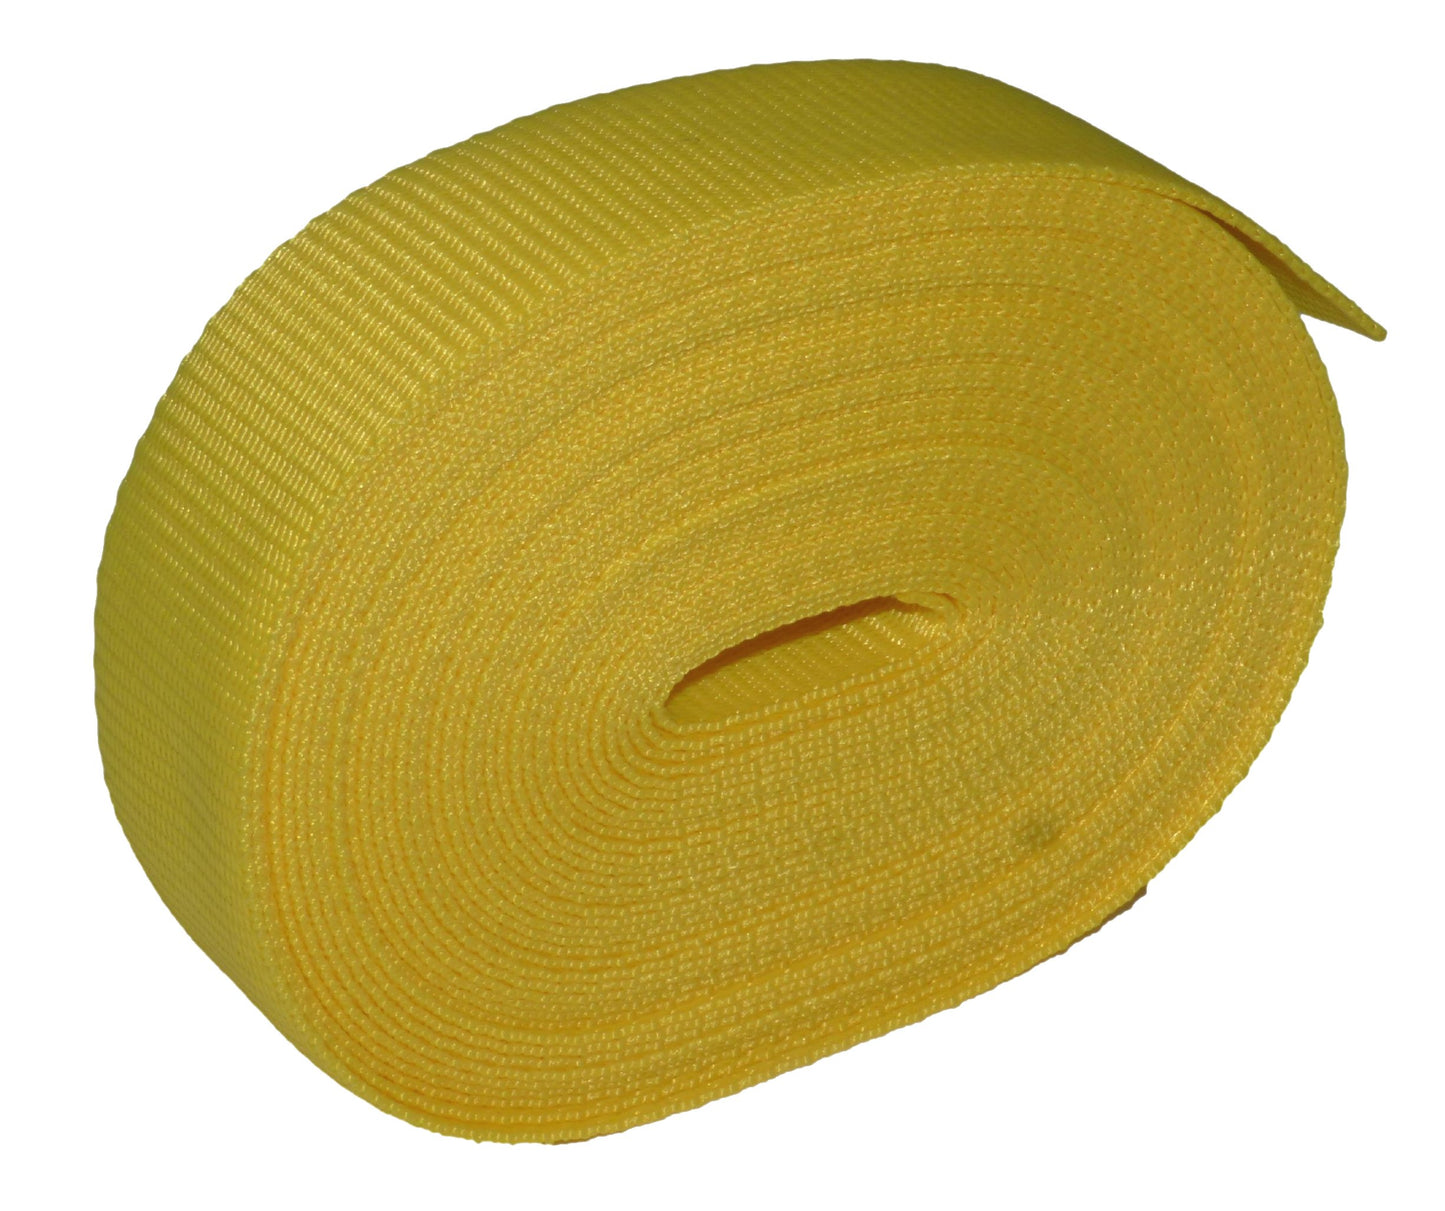 Benristraps 38mm (1  1/2") Polypropylene Webbing, 10 Metres (32') Roll in yellow